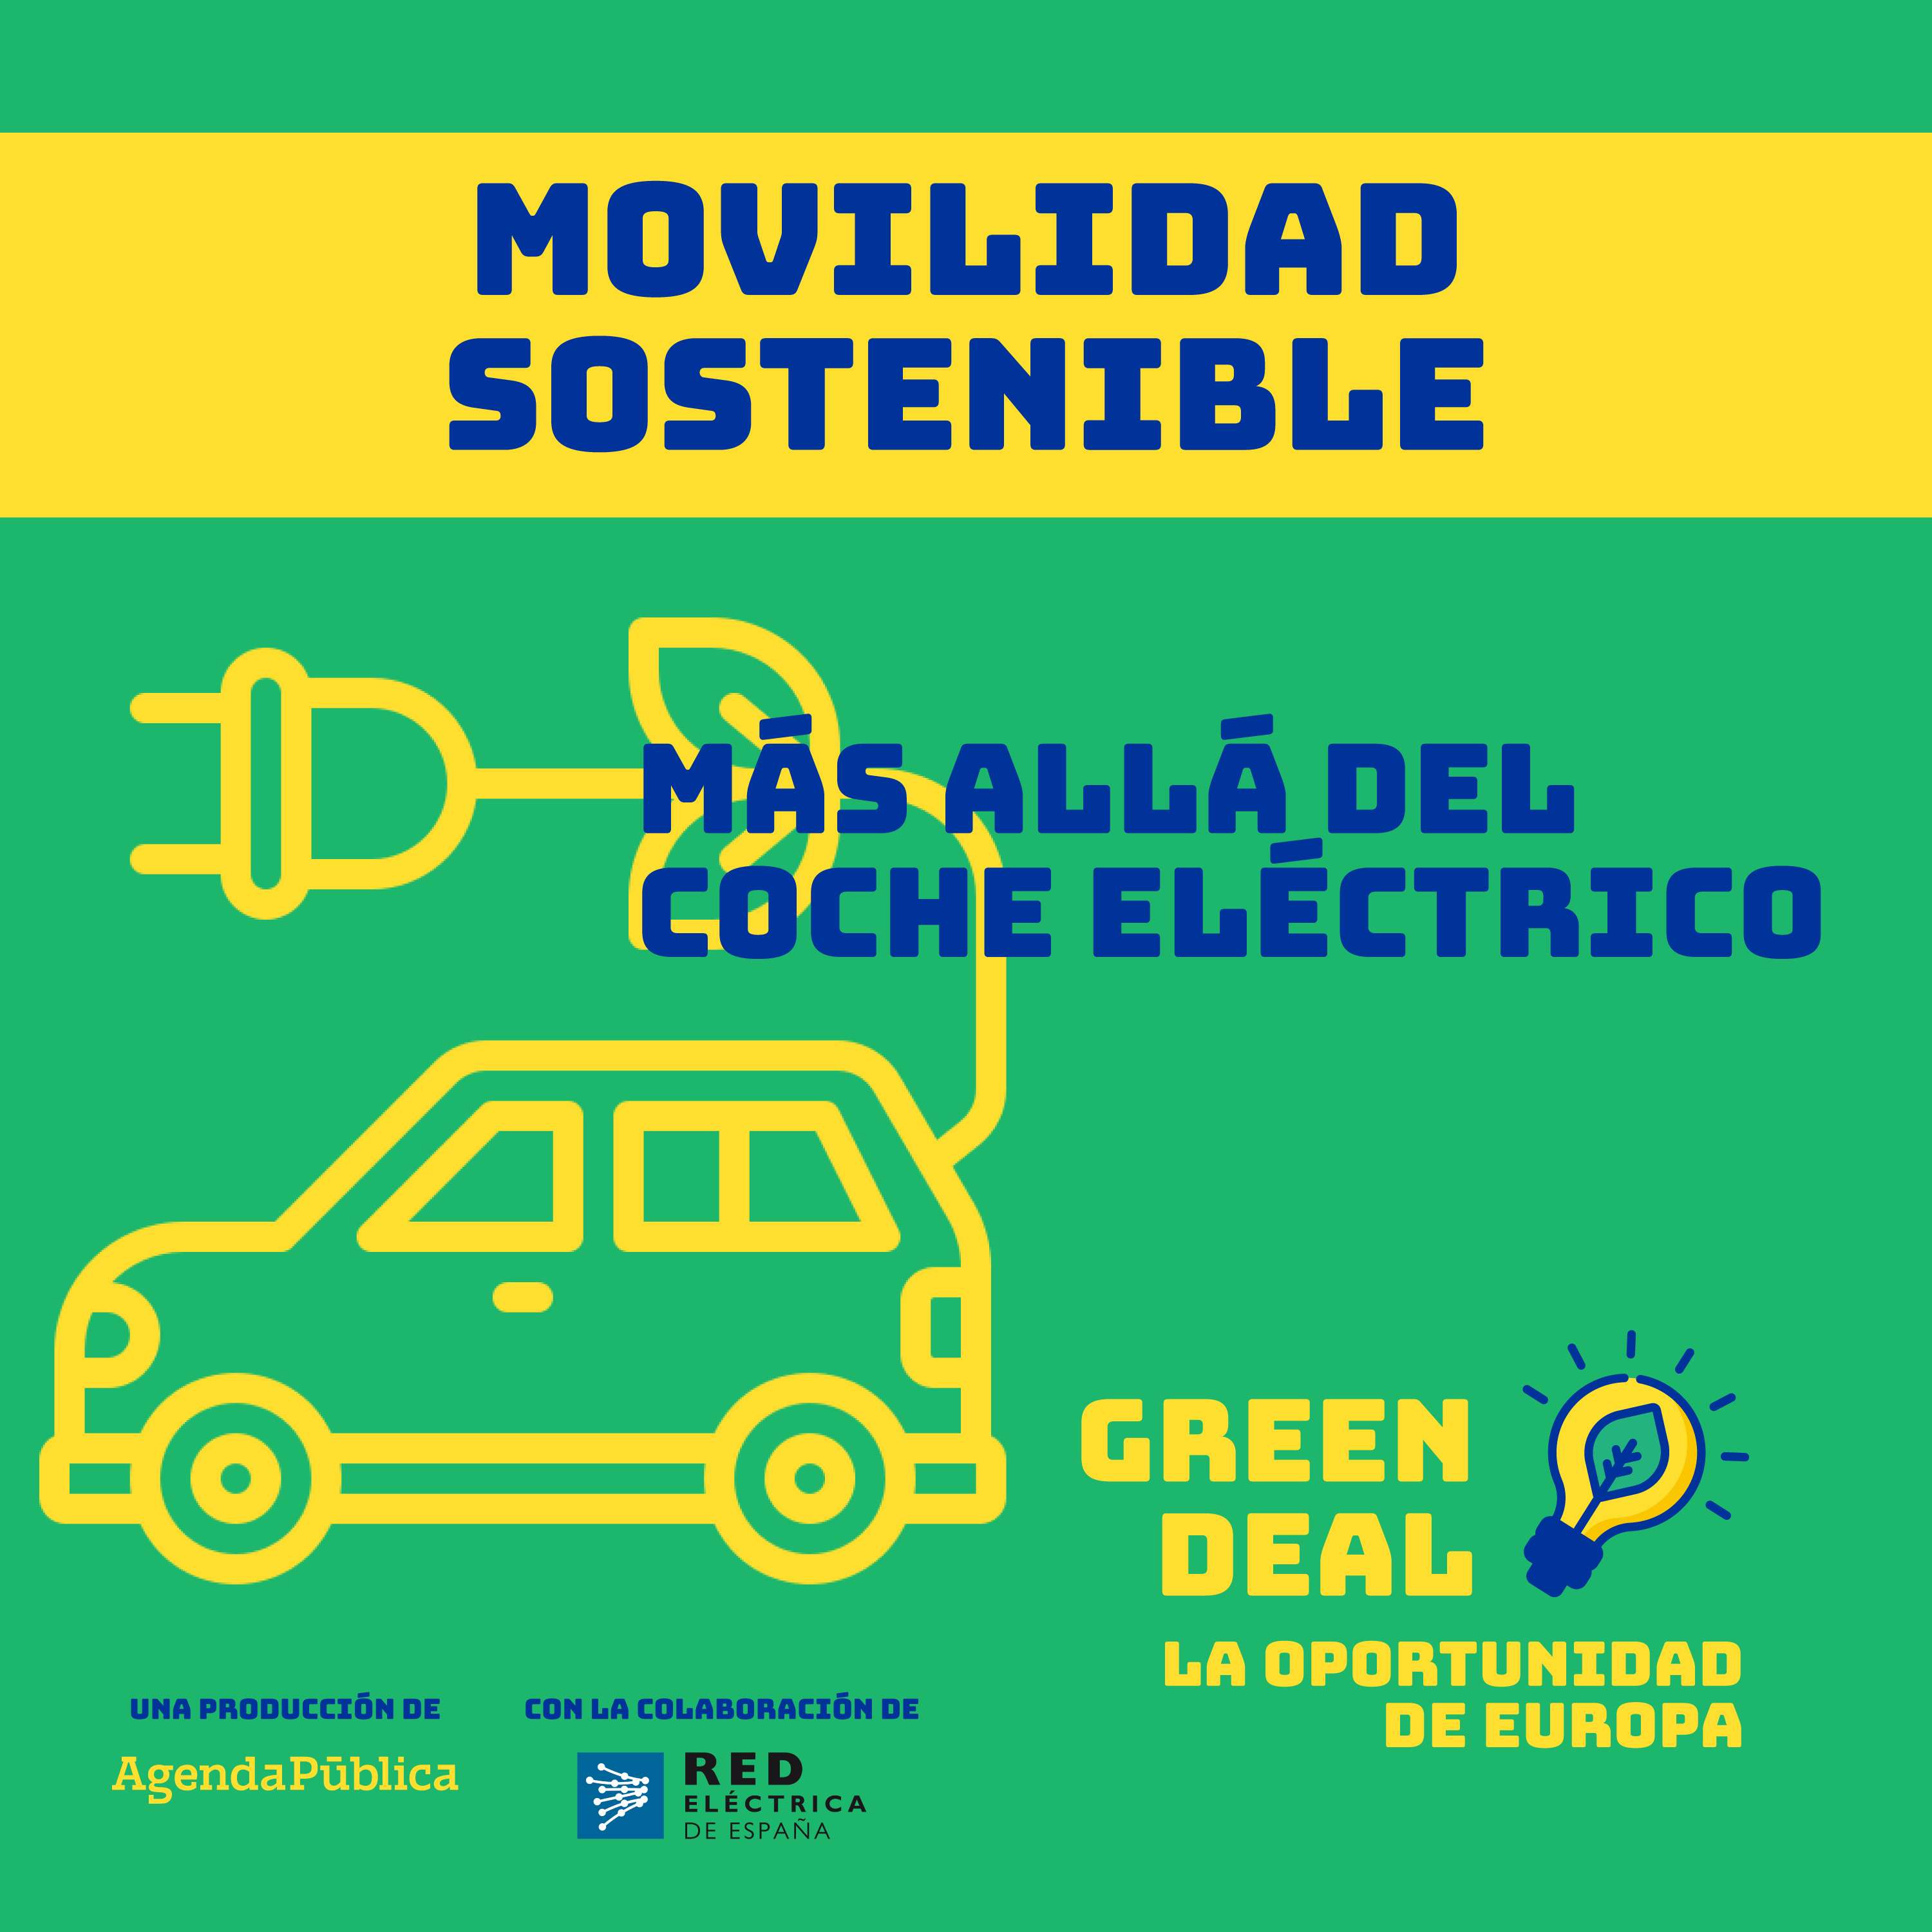 Movilidad sostenible: más allá del coche eléctrico